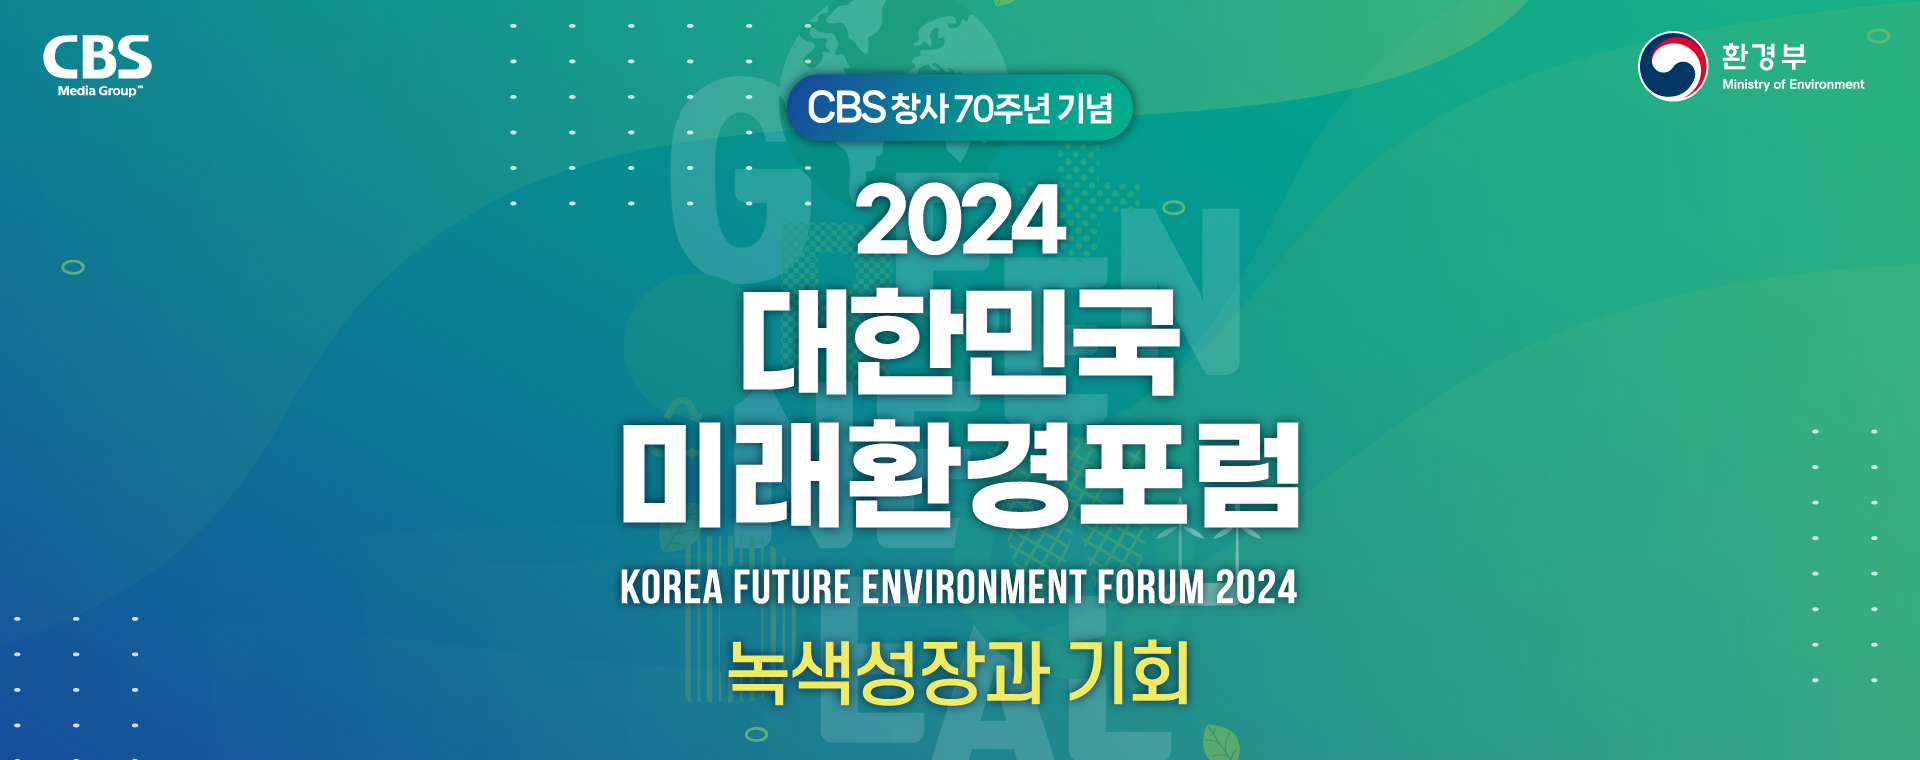 대한민국 미래환경 포럼